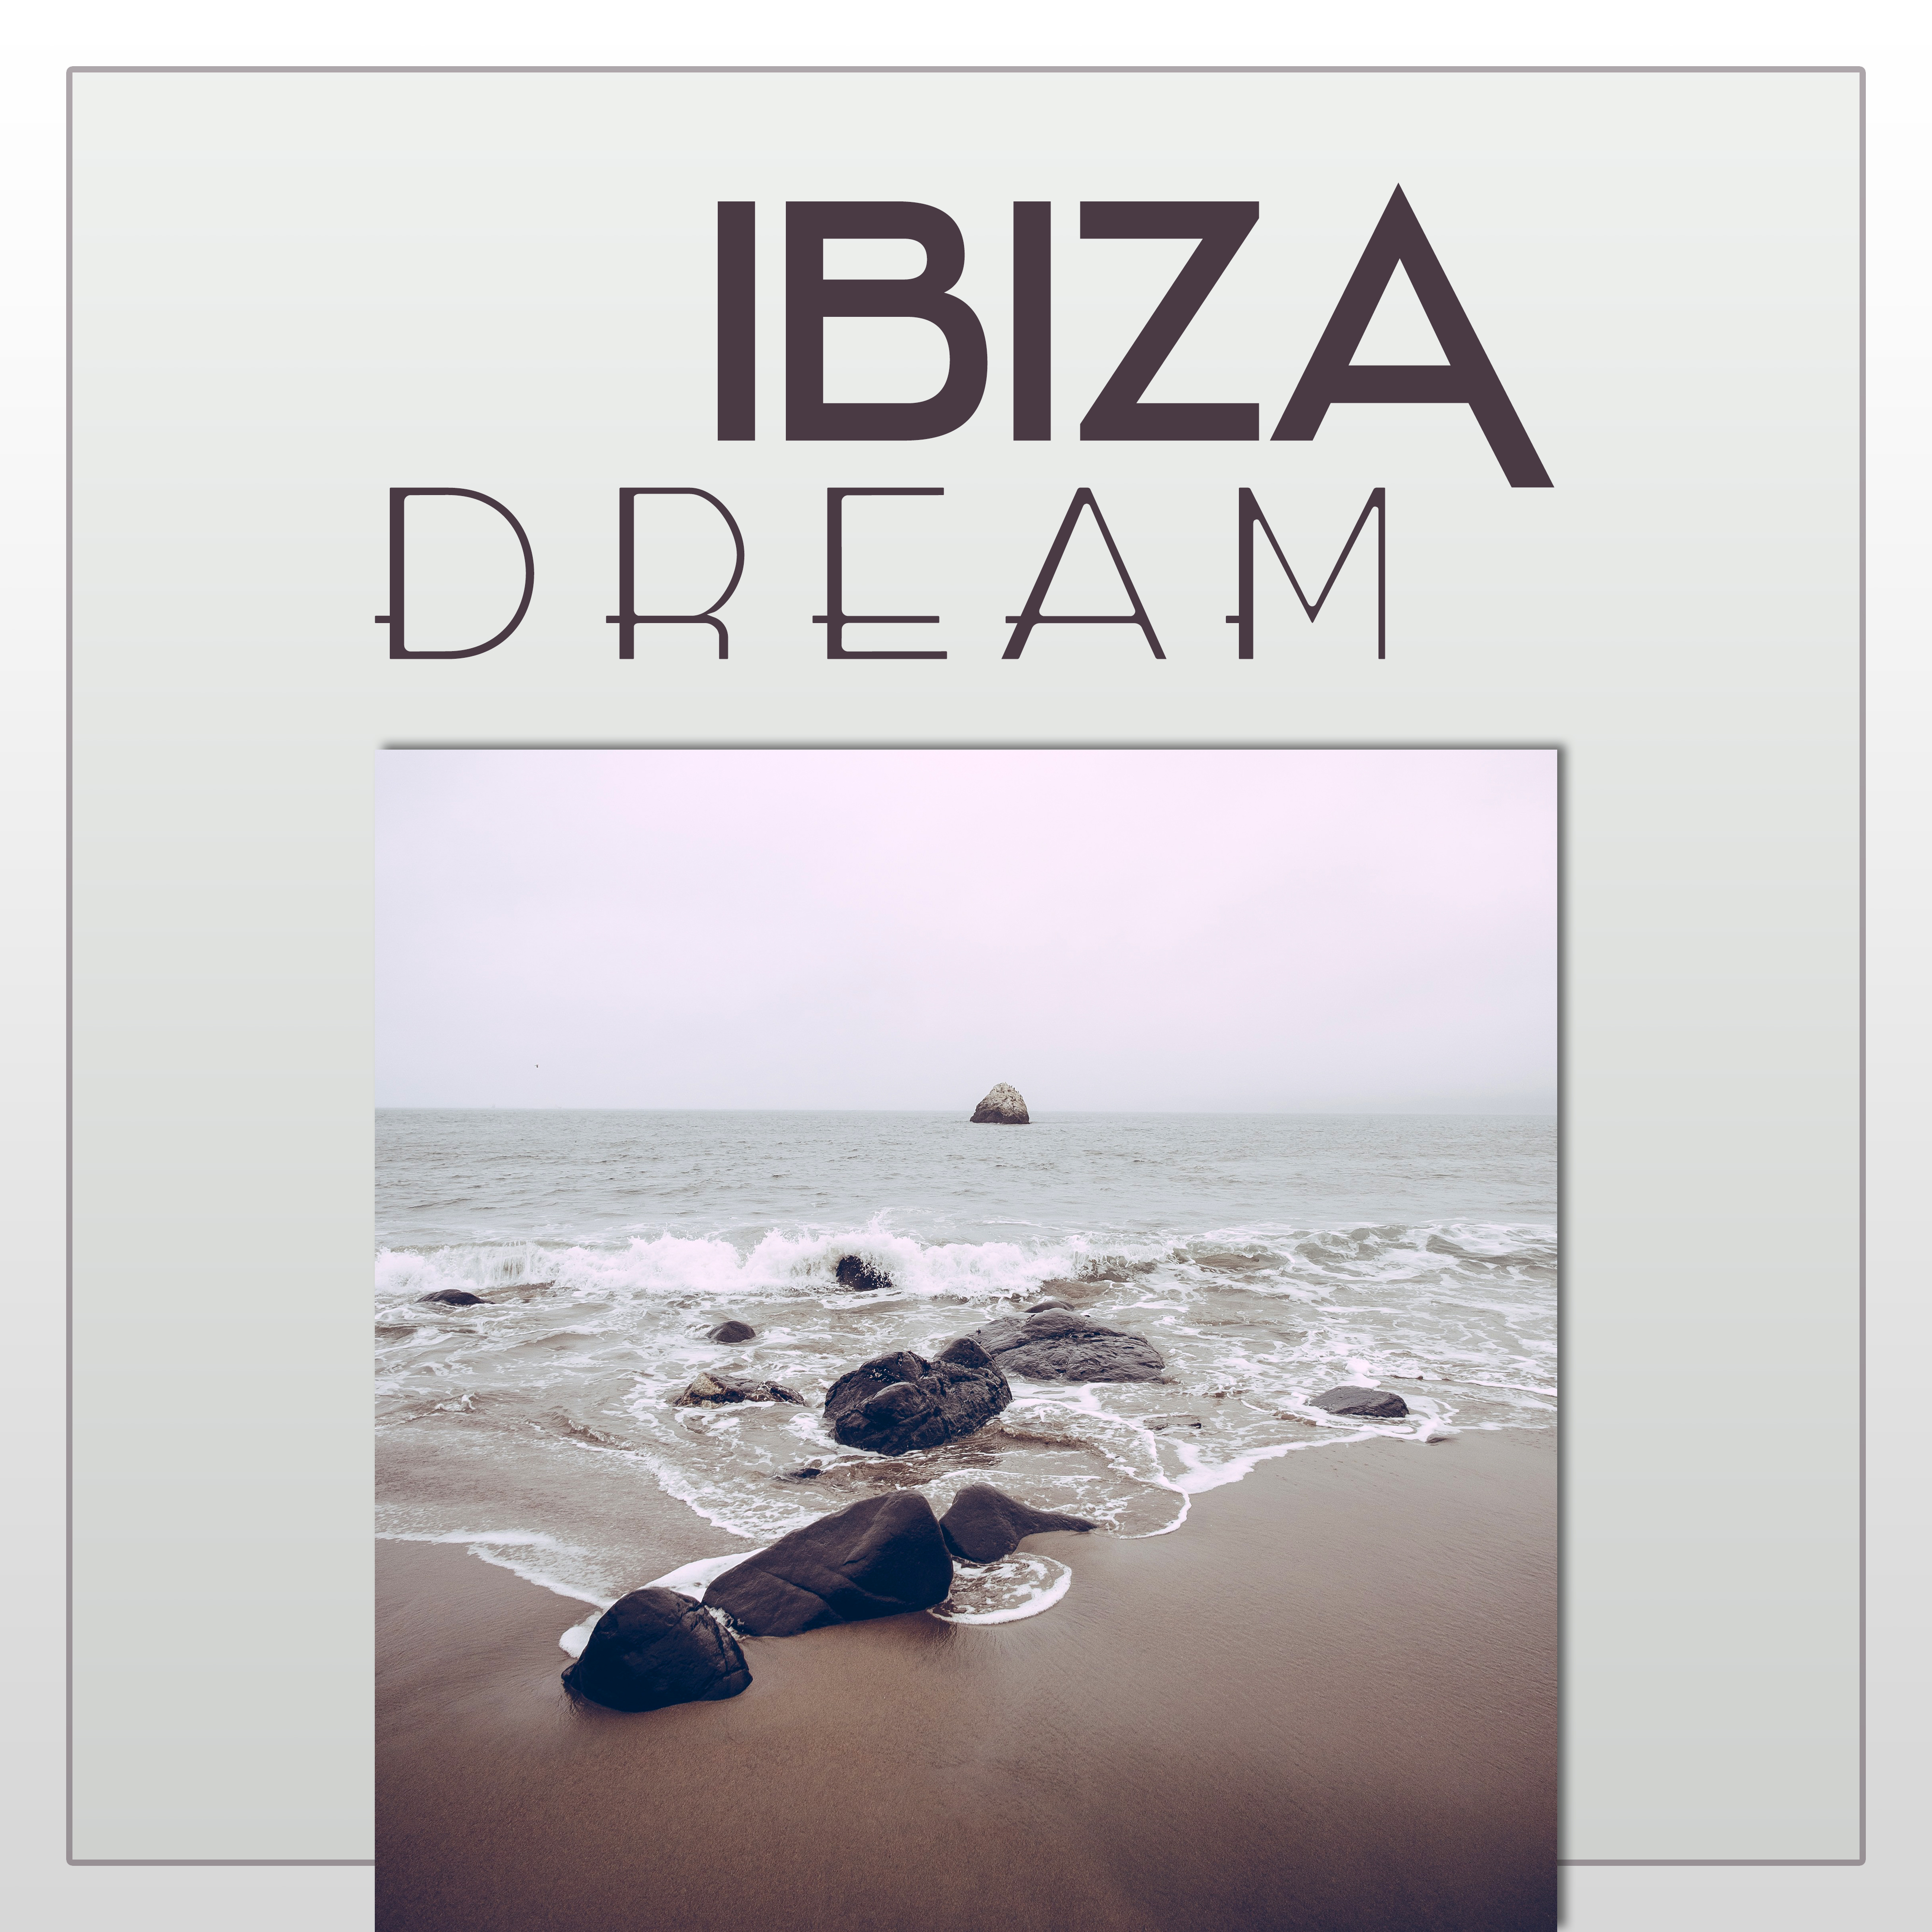 Ibiza Dream – Summer Chill Out Music, Beach Music, Deep Chill Out Lounge, Beach Party, Chill Out Hits 2016, Blue Wave